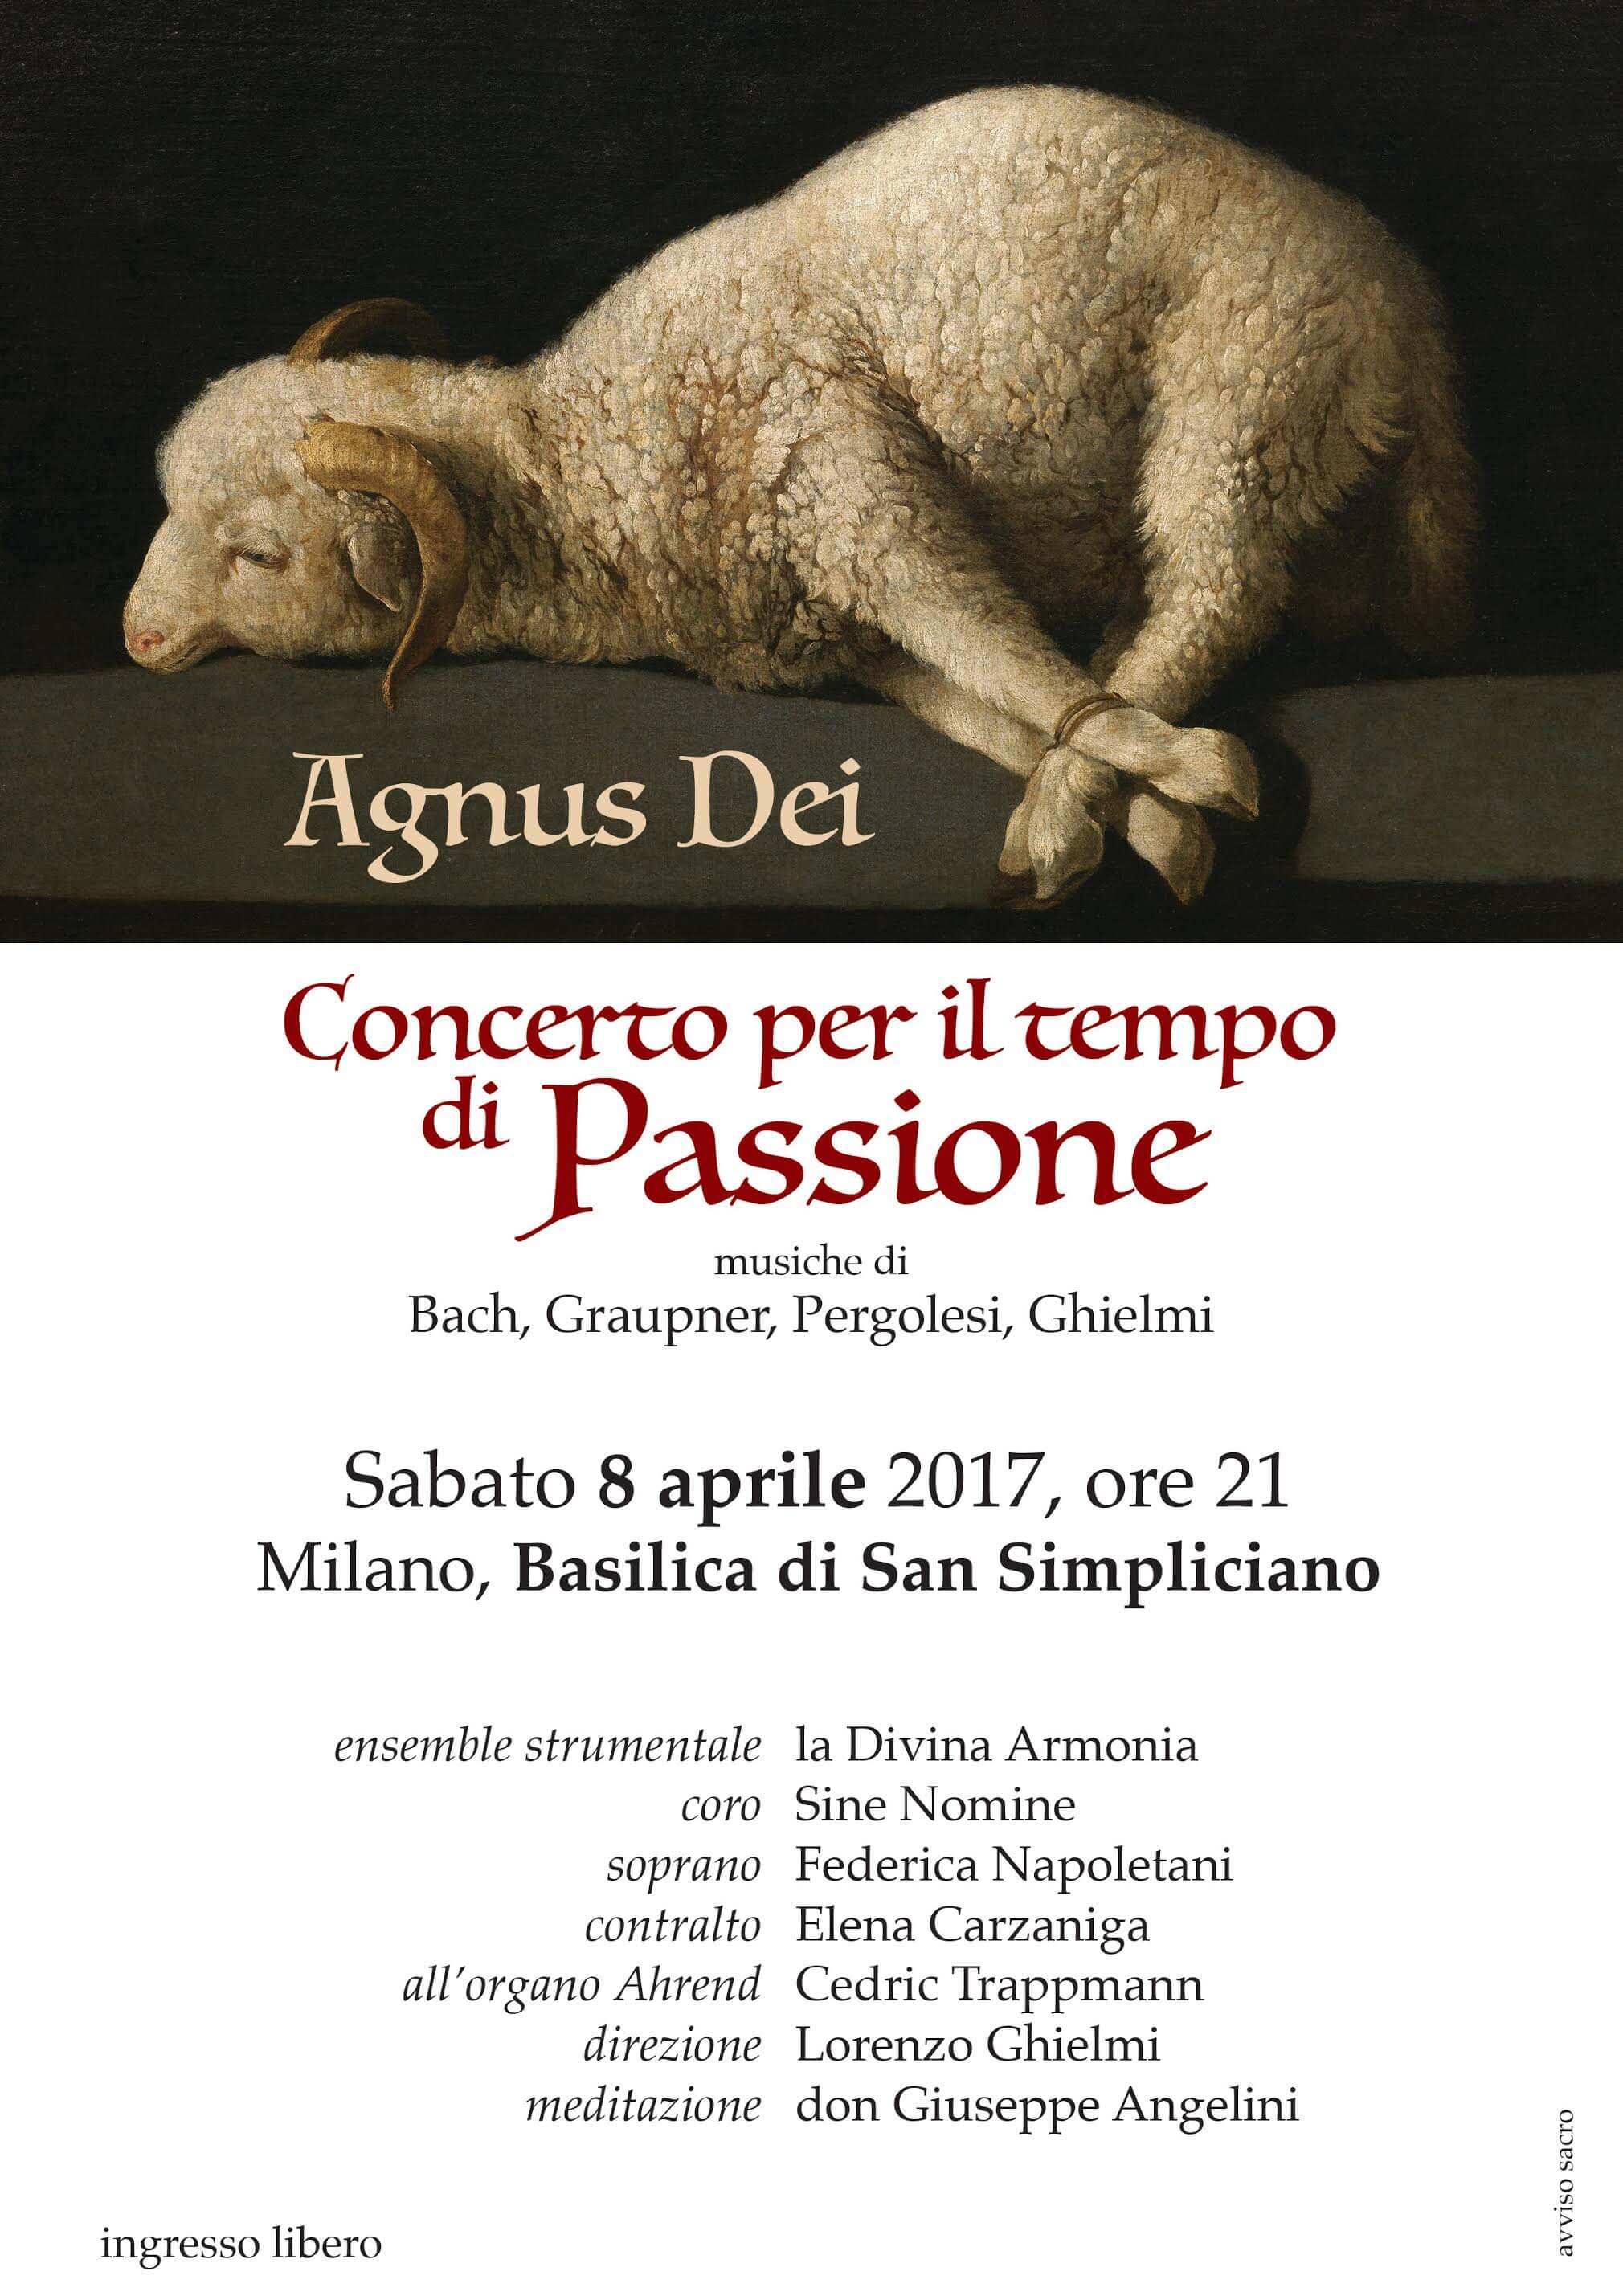 Agnus Dei - Concerto per il tempo di Passione